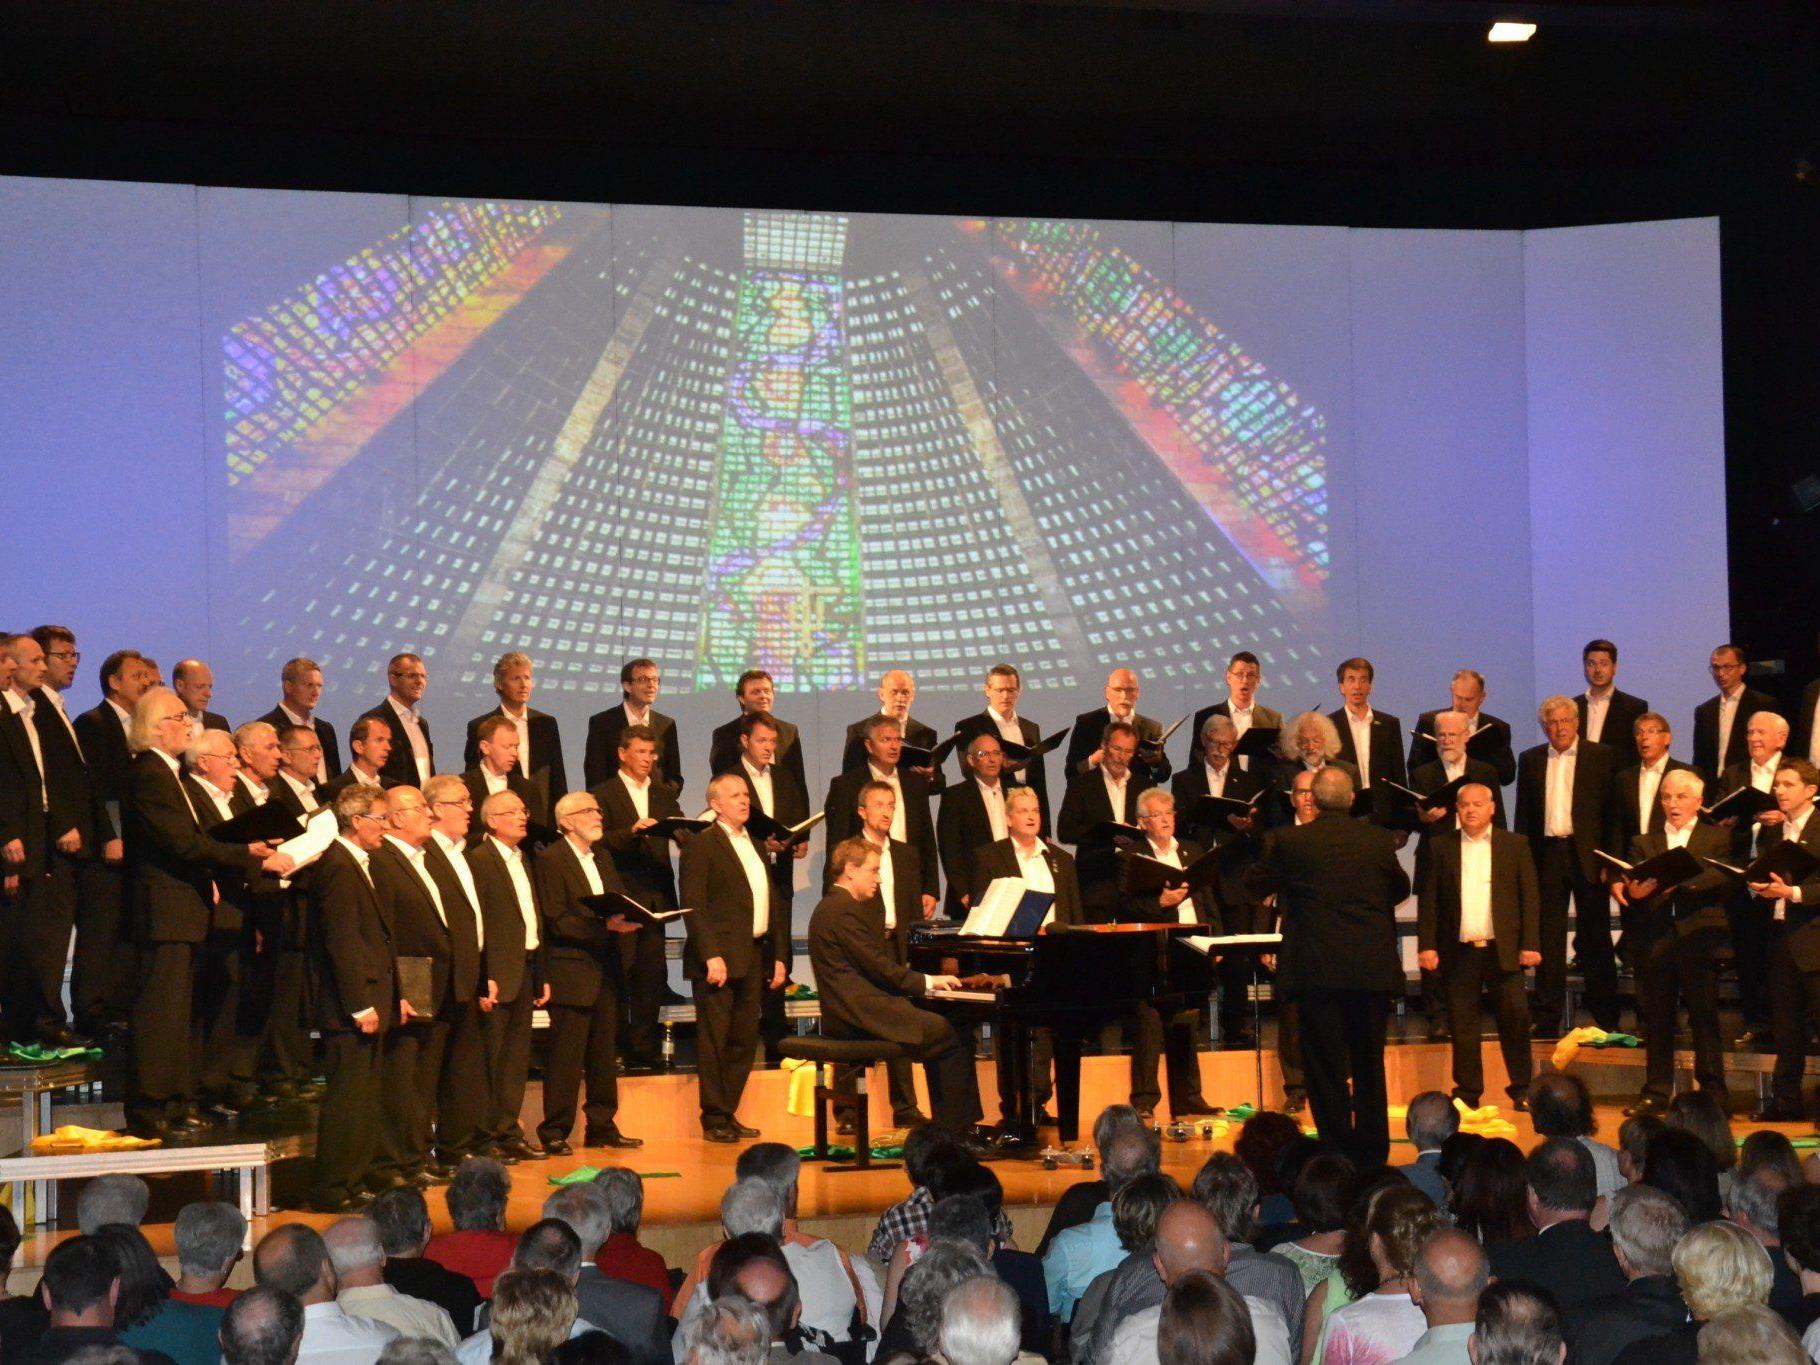 Der Männerchor Götzis begeisterte das Publikum mit Eindrücken von der Konzerttournee nach Südamerika